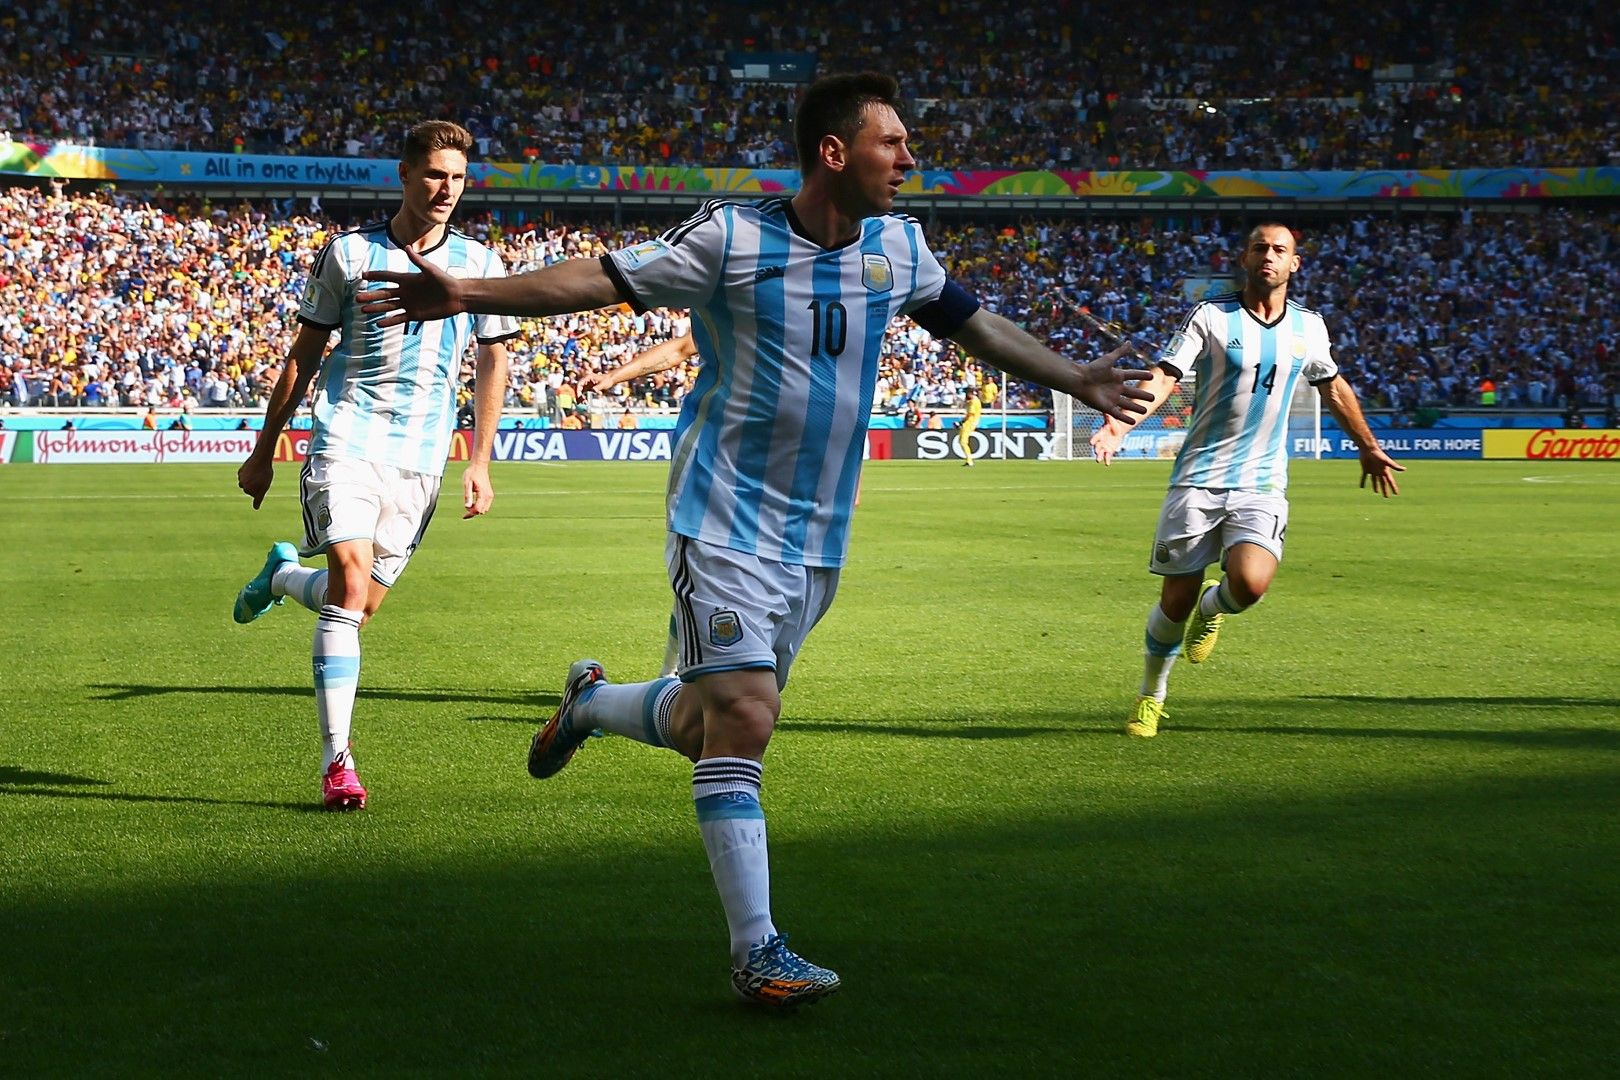 21 юни 2014 г., Белу Оризонте. Меси вкарва с последния удар в мача за 1:0 в добавеното време. Аржентина бие с 1:0 Иран, като с две победи в групата тимът е сигурен вече за елиминациите.